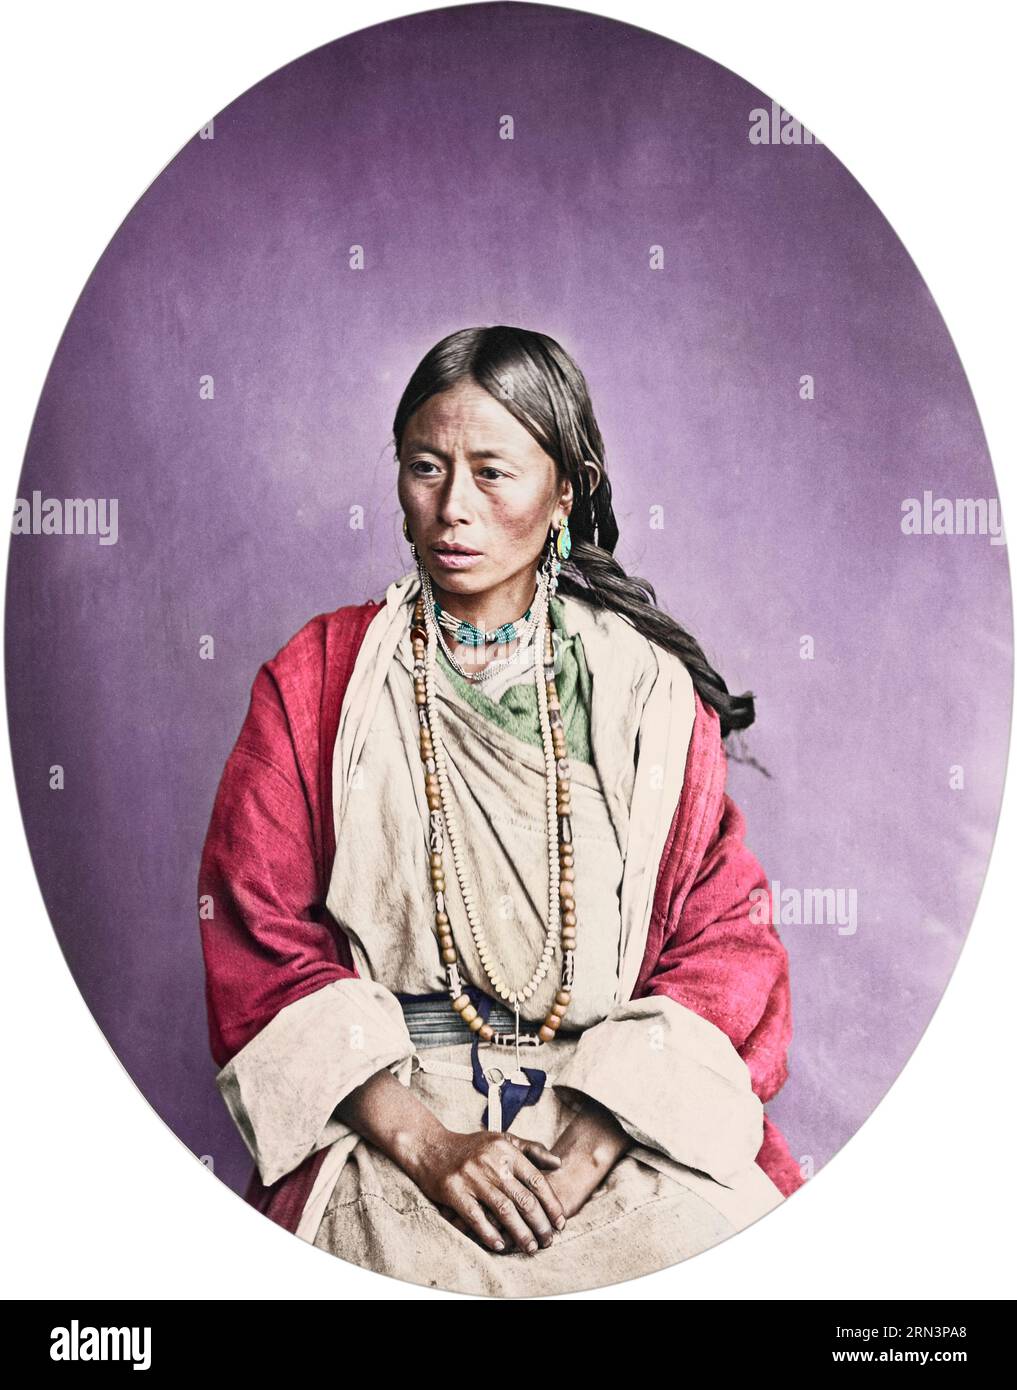 Indische Frau mit Halskette; Unbekannter Hersteller; um 1866; Albumsilberdruck. Porträt einer Frau aus einem Himalaya-Stamm, sitzend und leicht gegenüber le Stockfoto